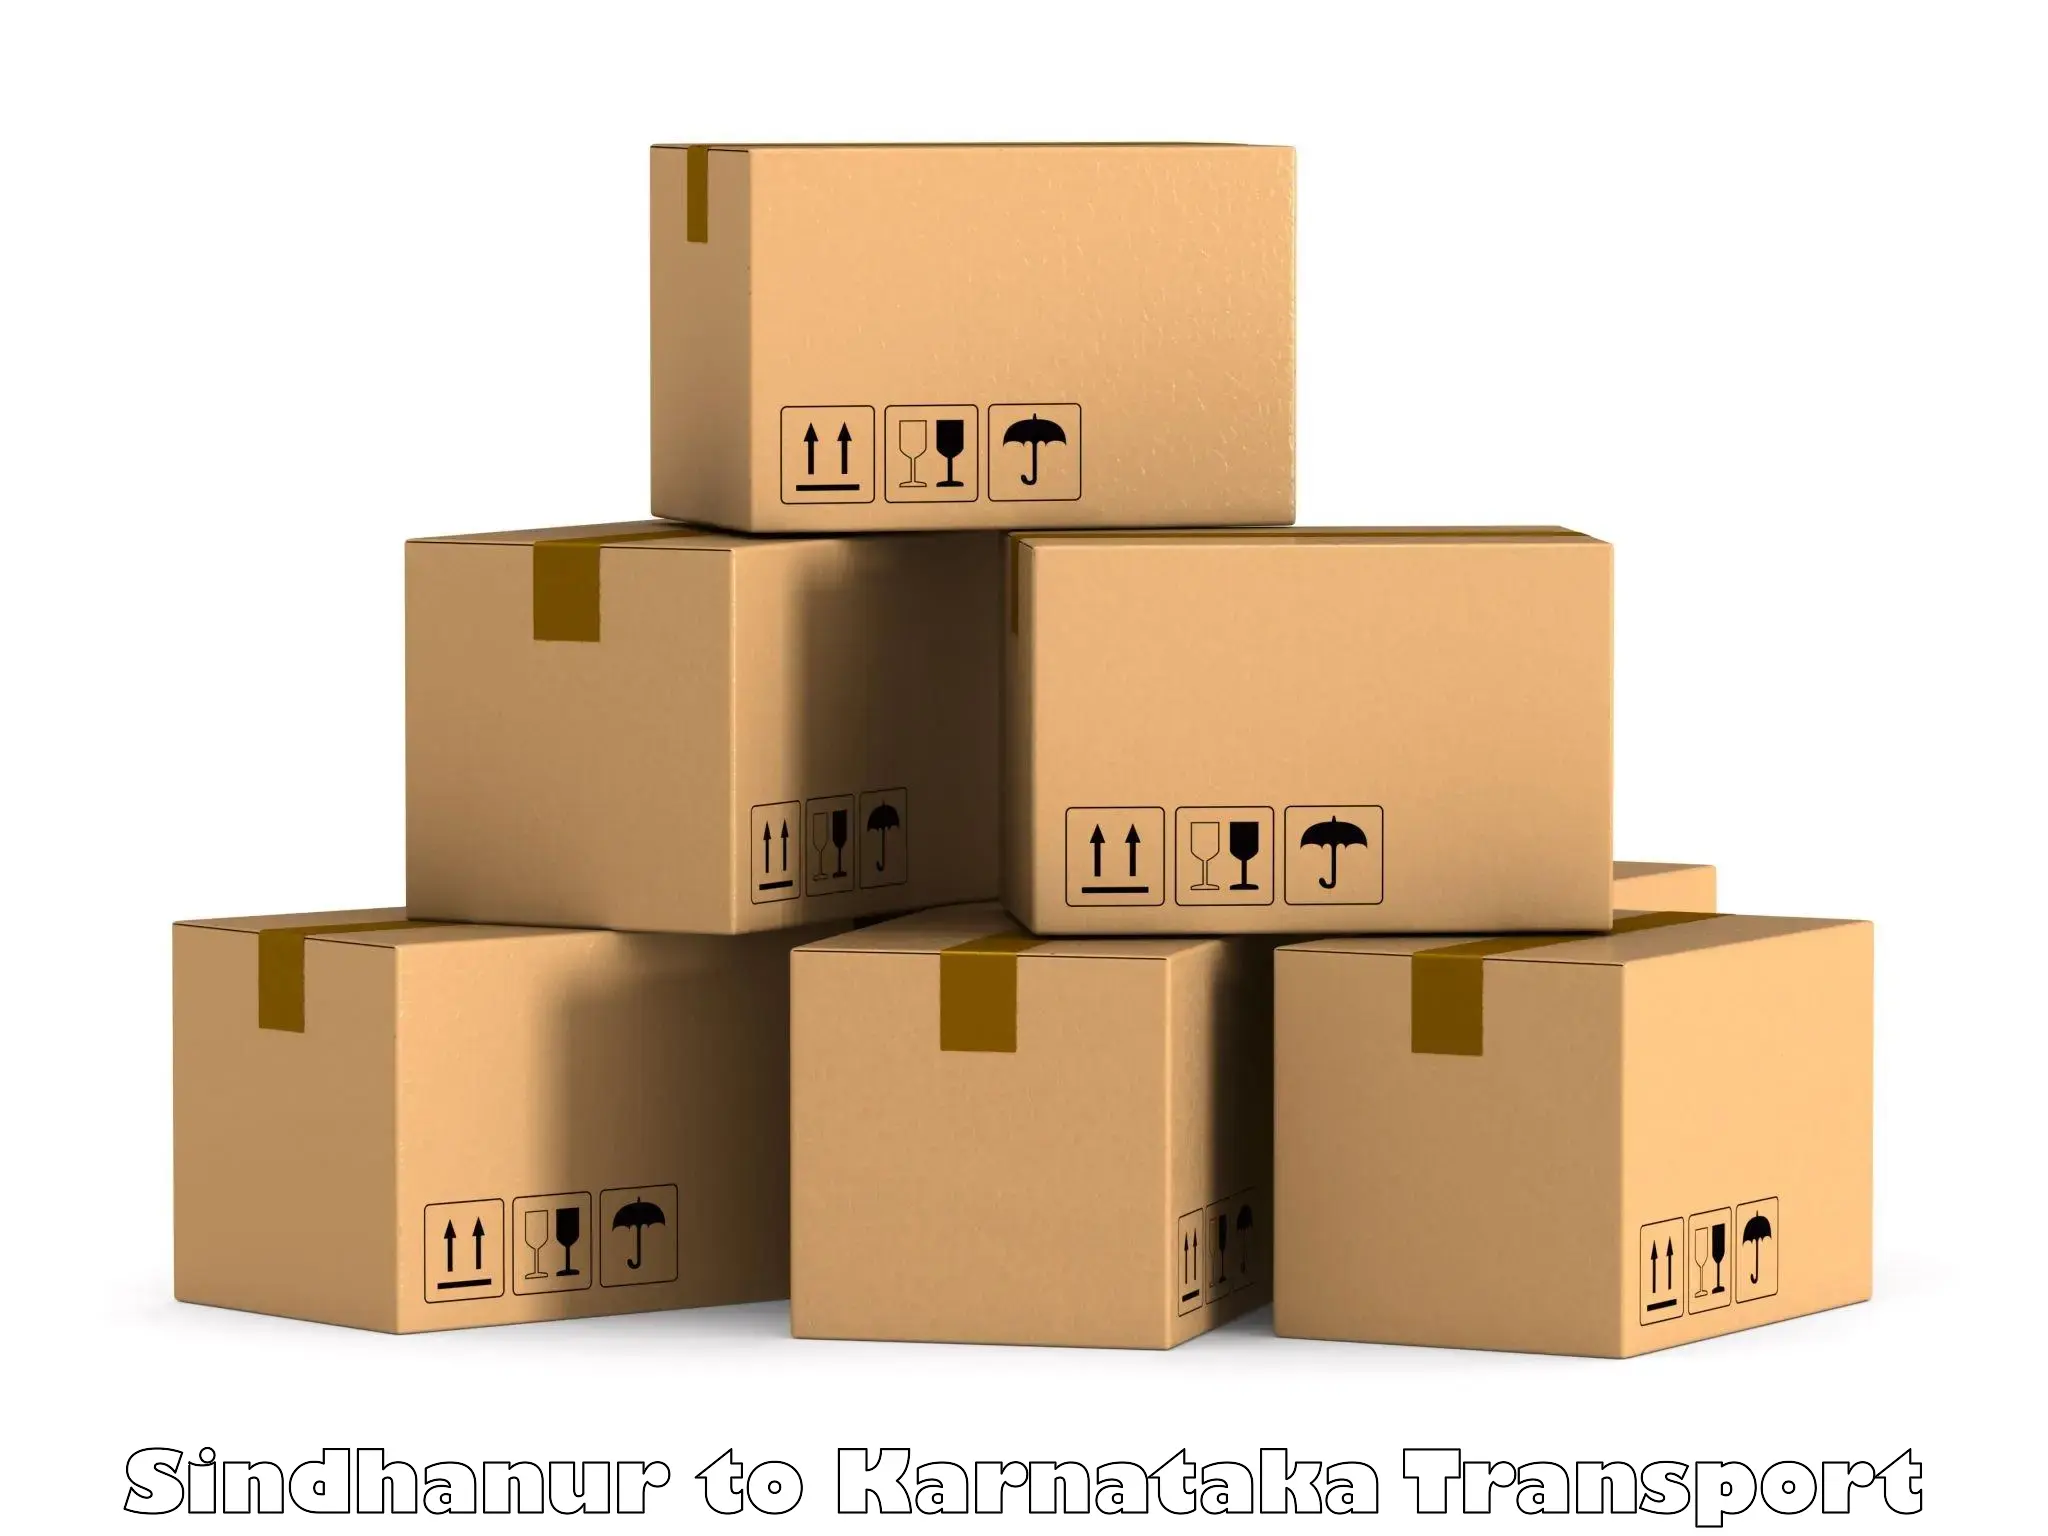 Goods delivery service Sindhanur to Jayanagar